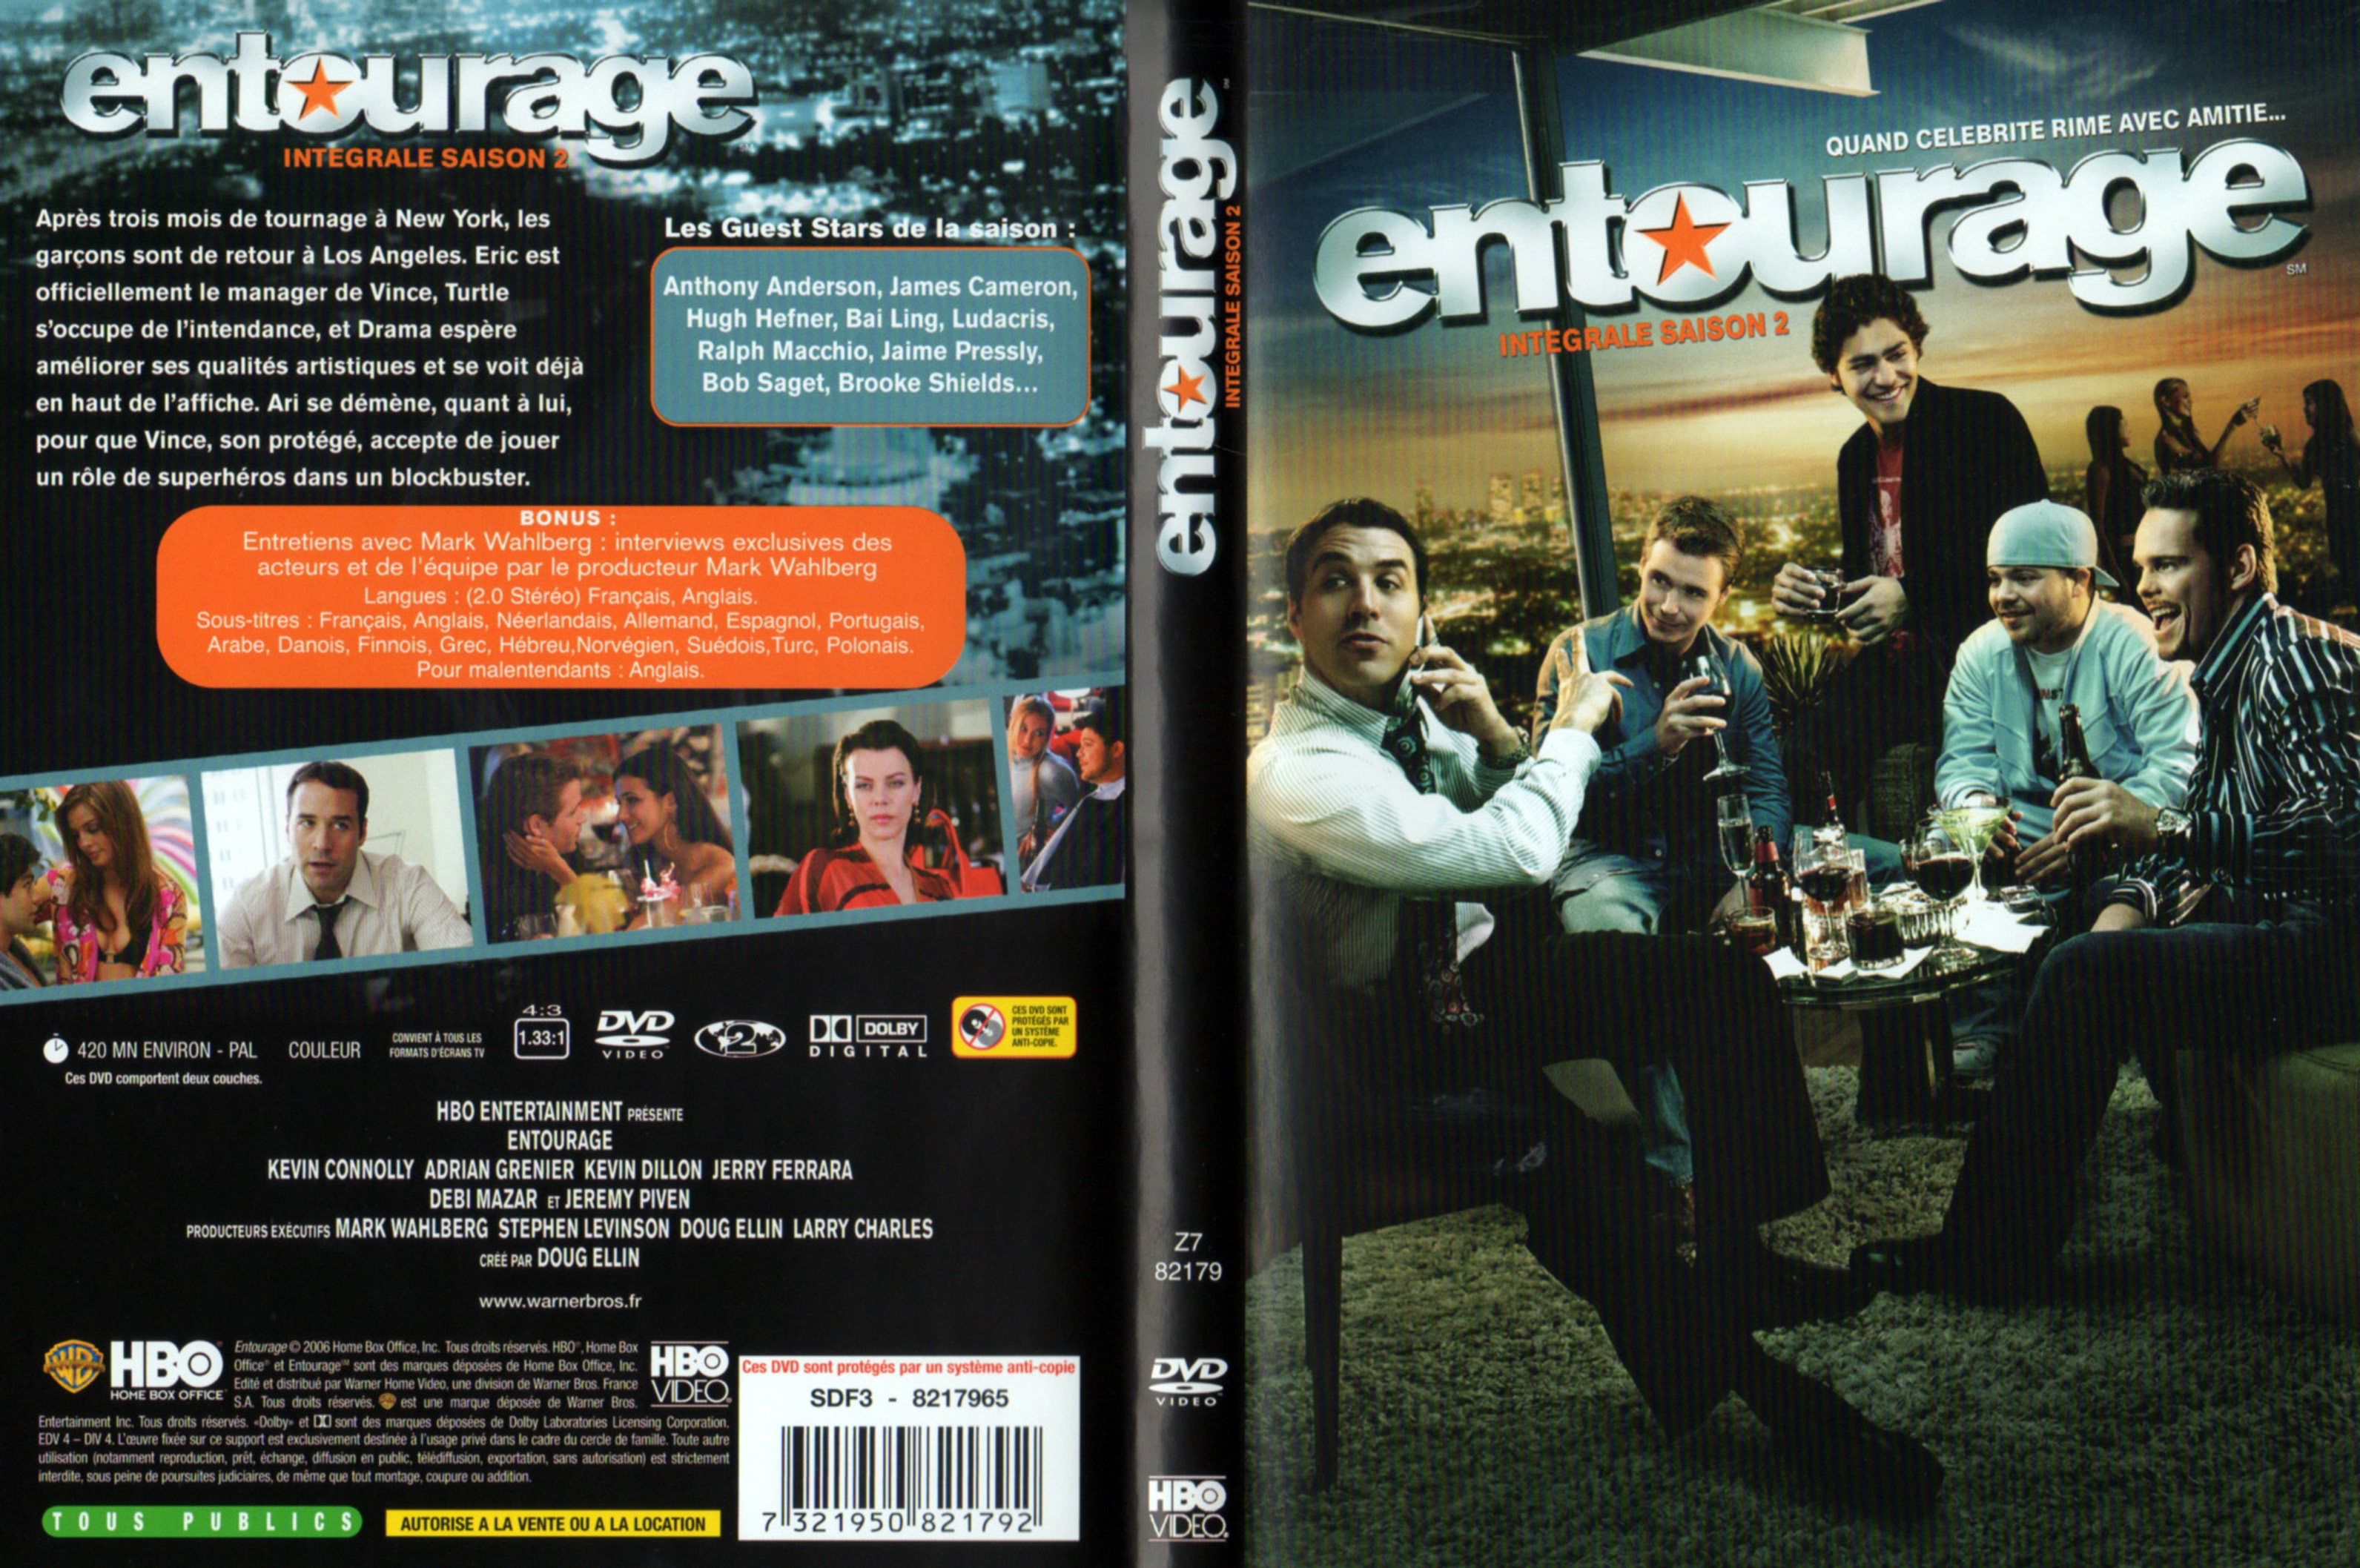 Jaquette DVD Entourage Saison 2